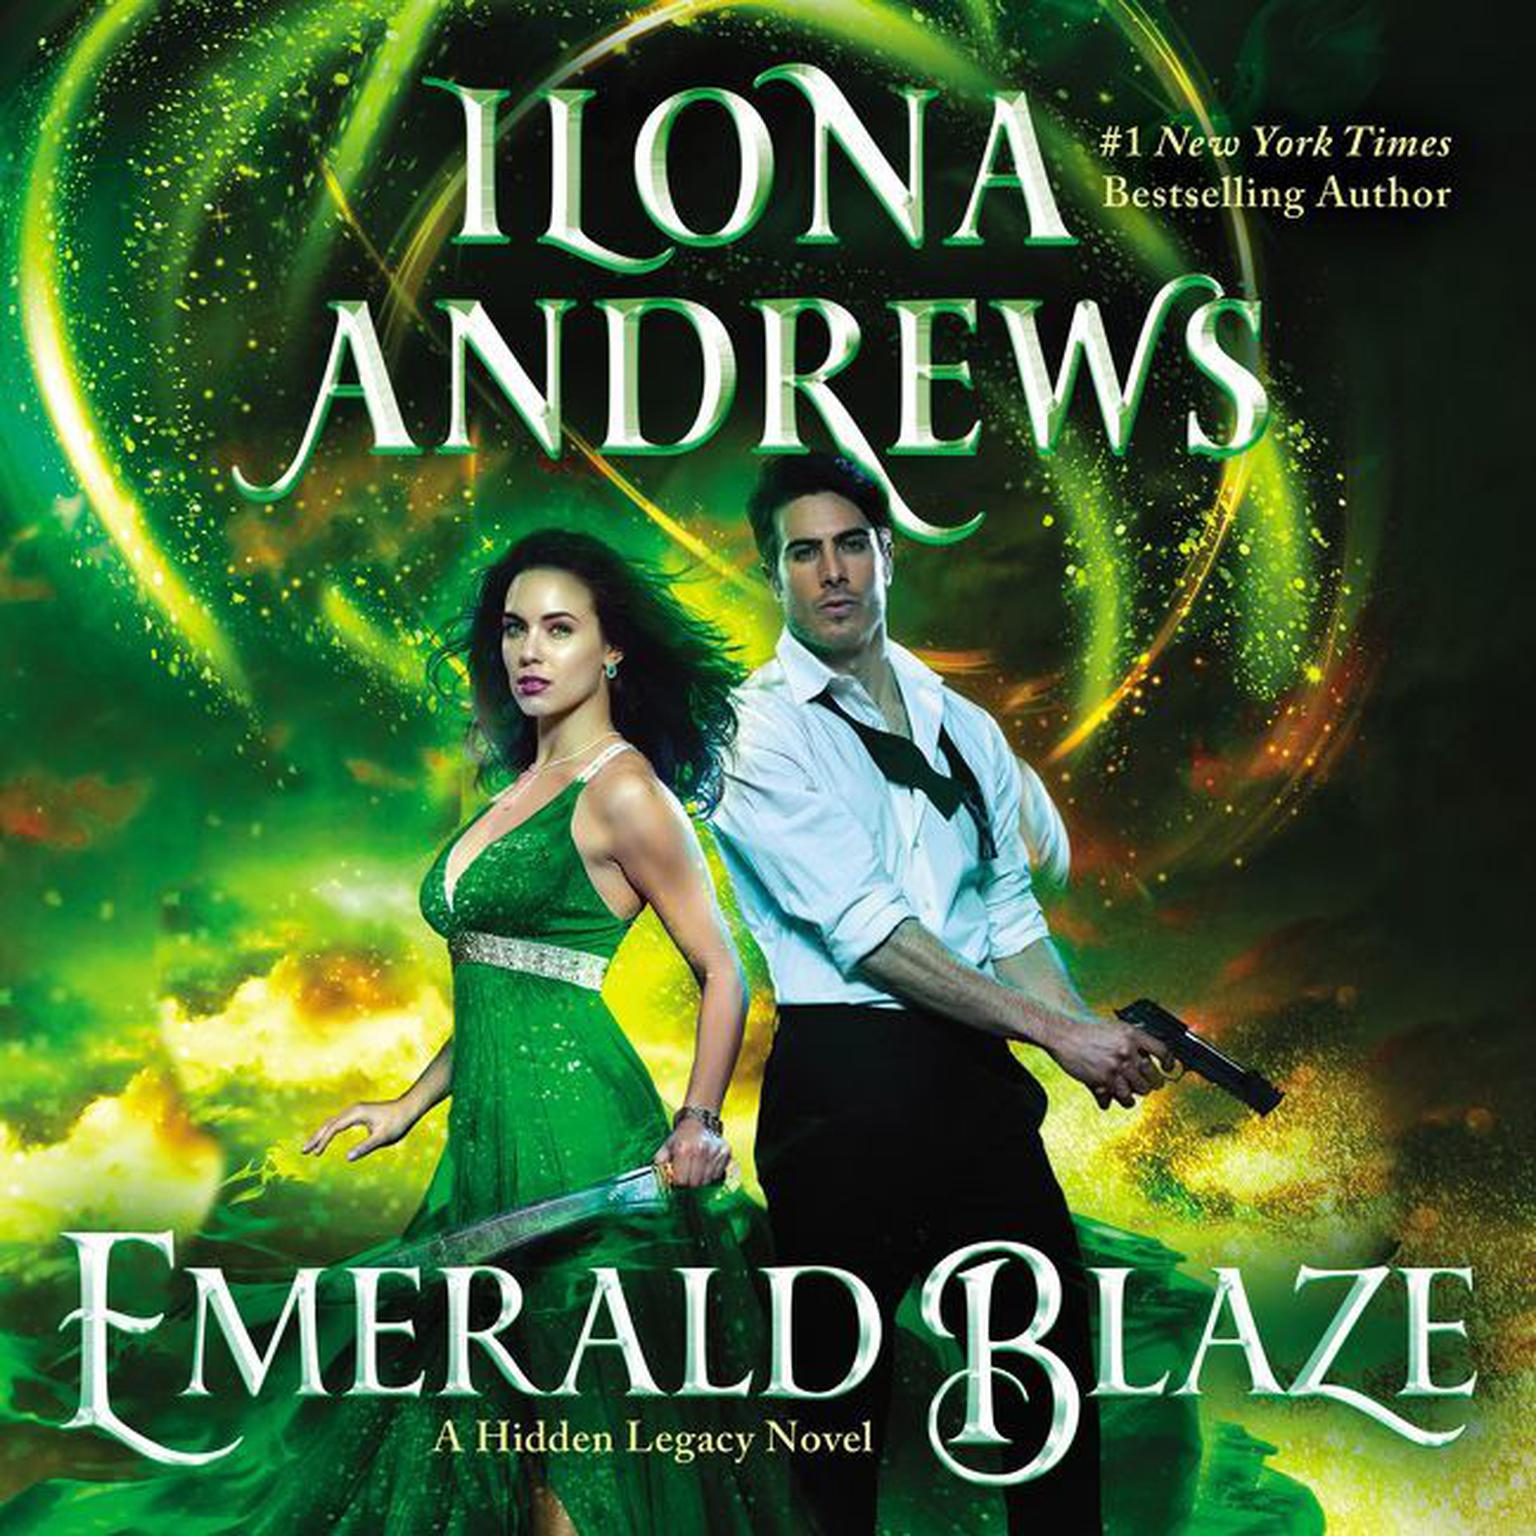 Emerald Blaze: A Hidden Legacy Novel Audiobook, by Ilona Andrews